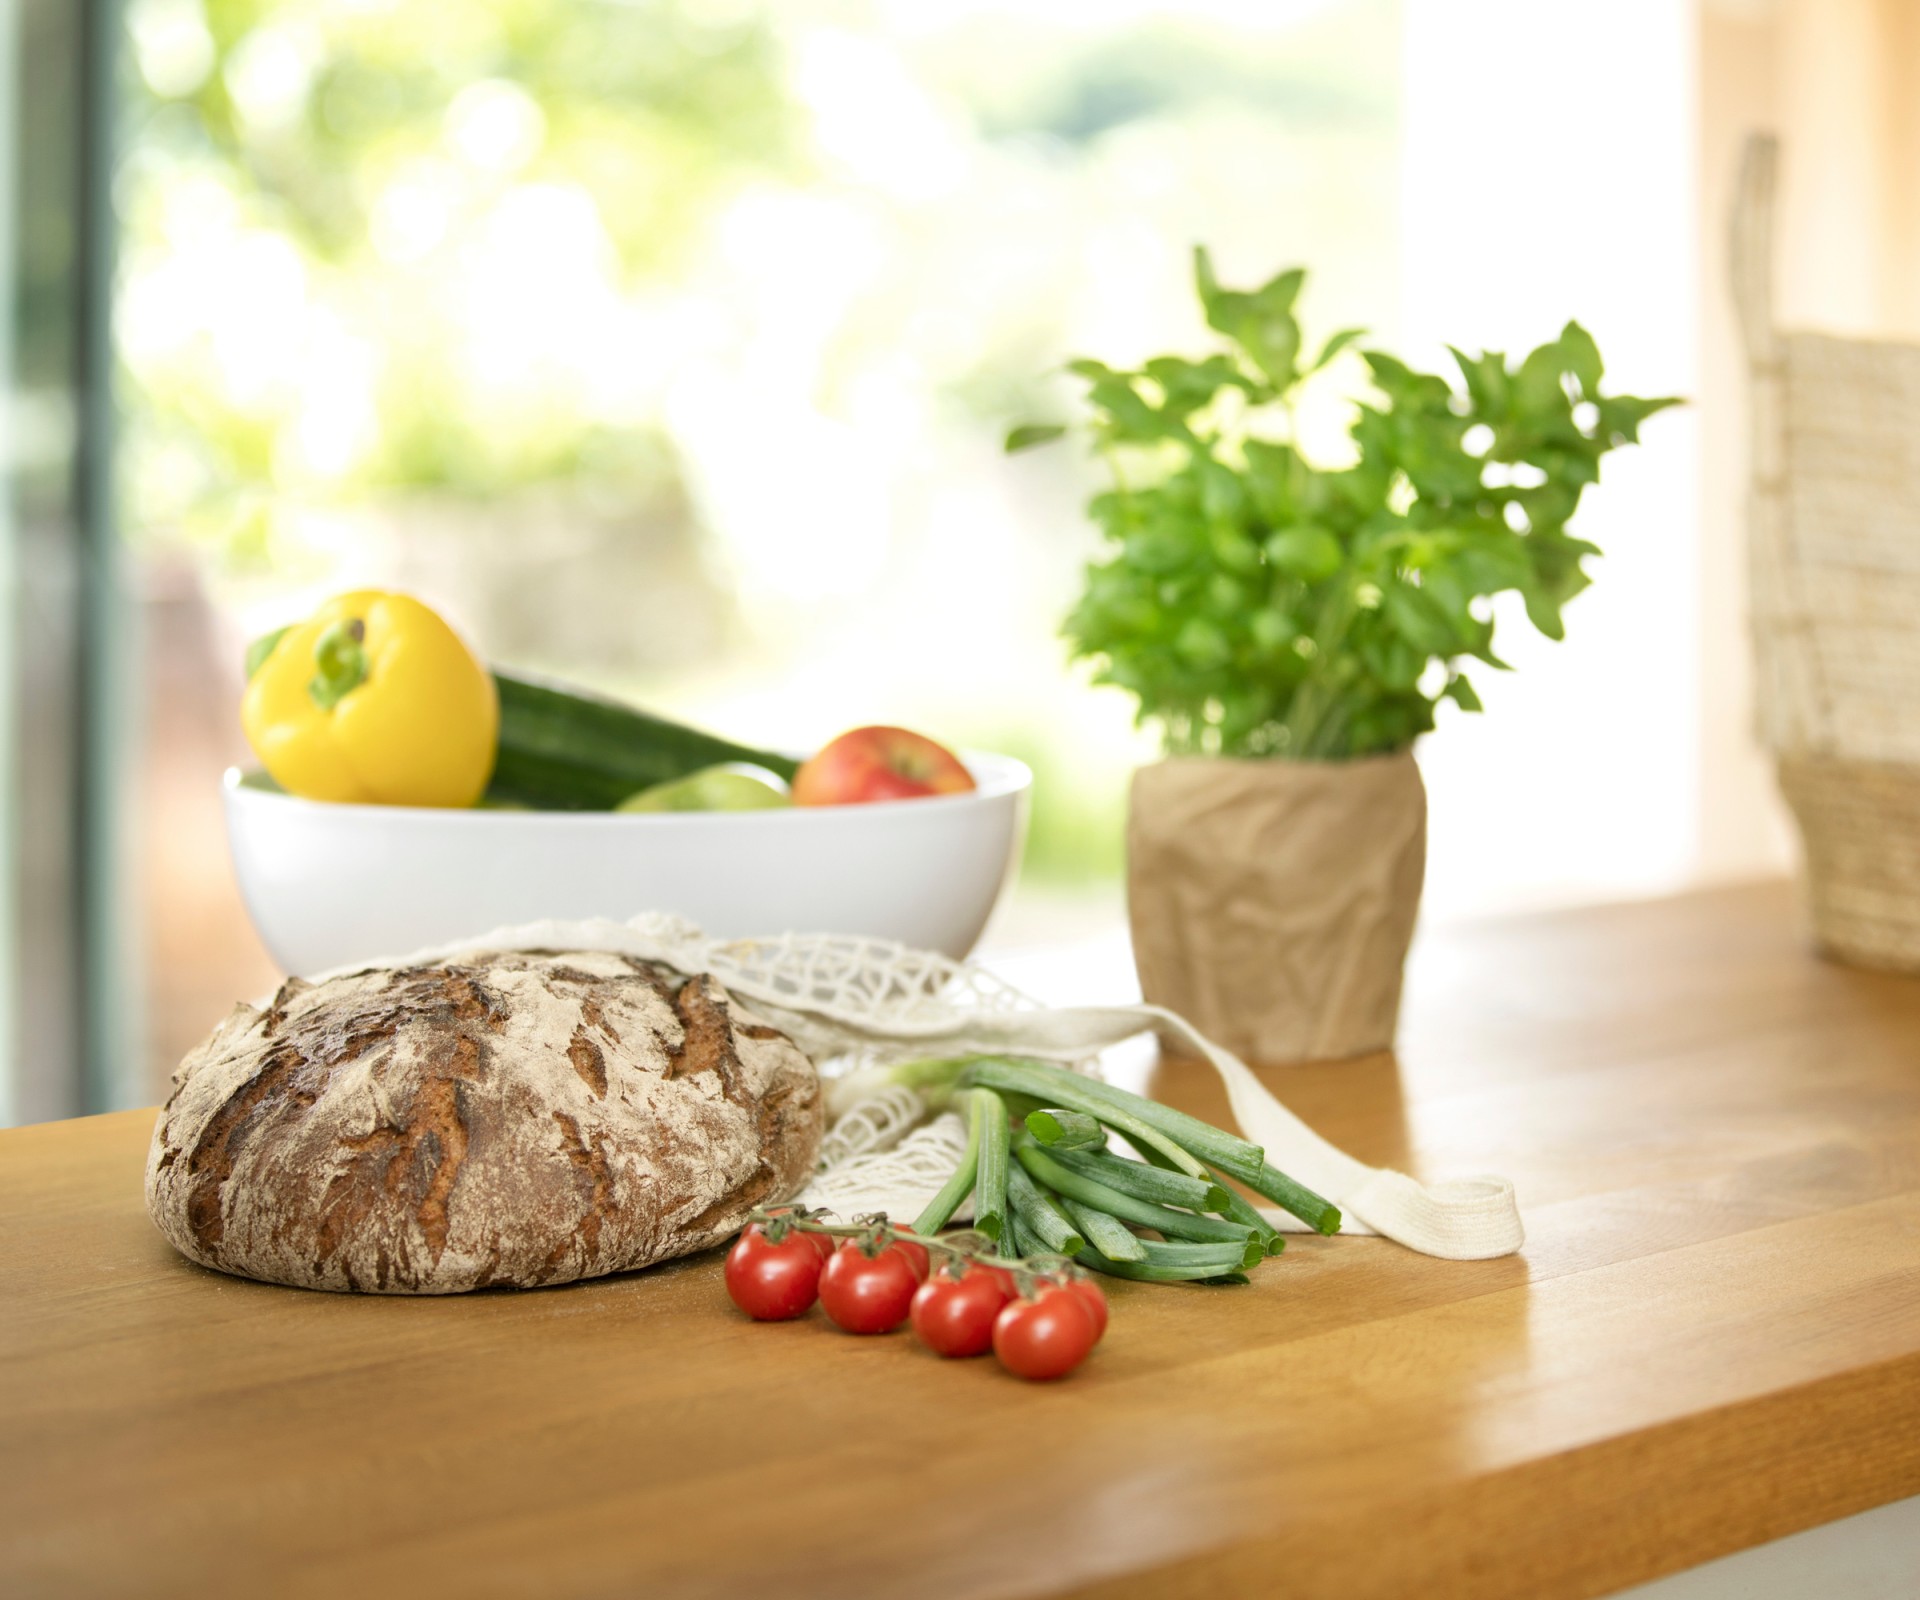 Auf einem Holztisch liegen ein Brot, Tomaten, Basilikum und eine Schale mit Gemüse